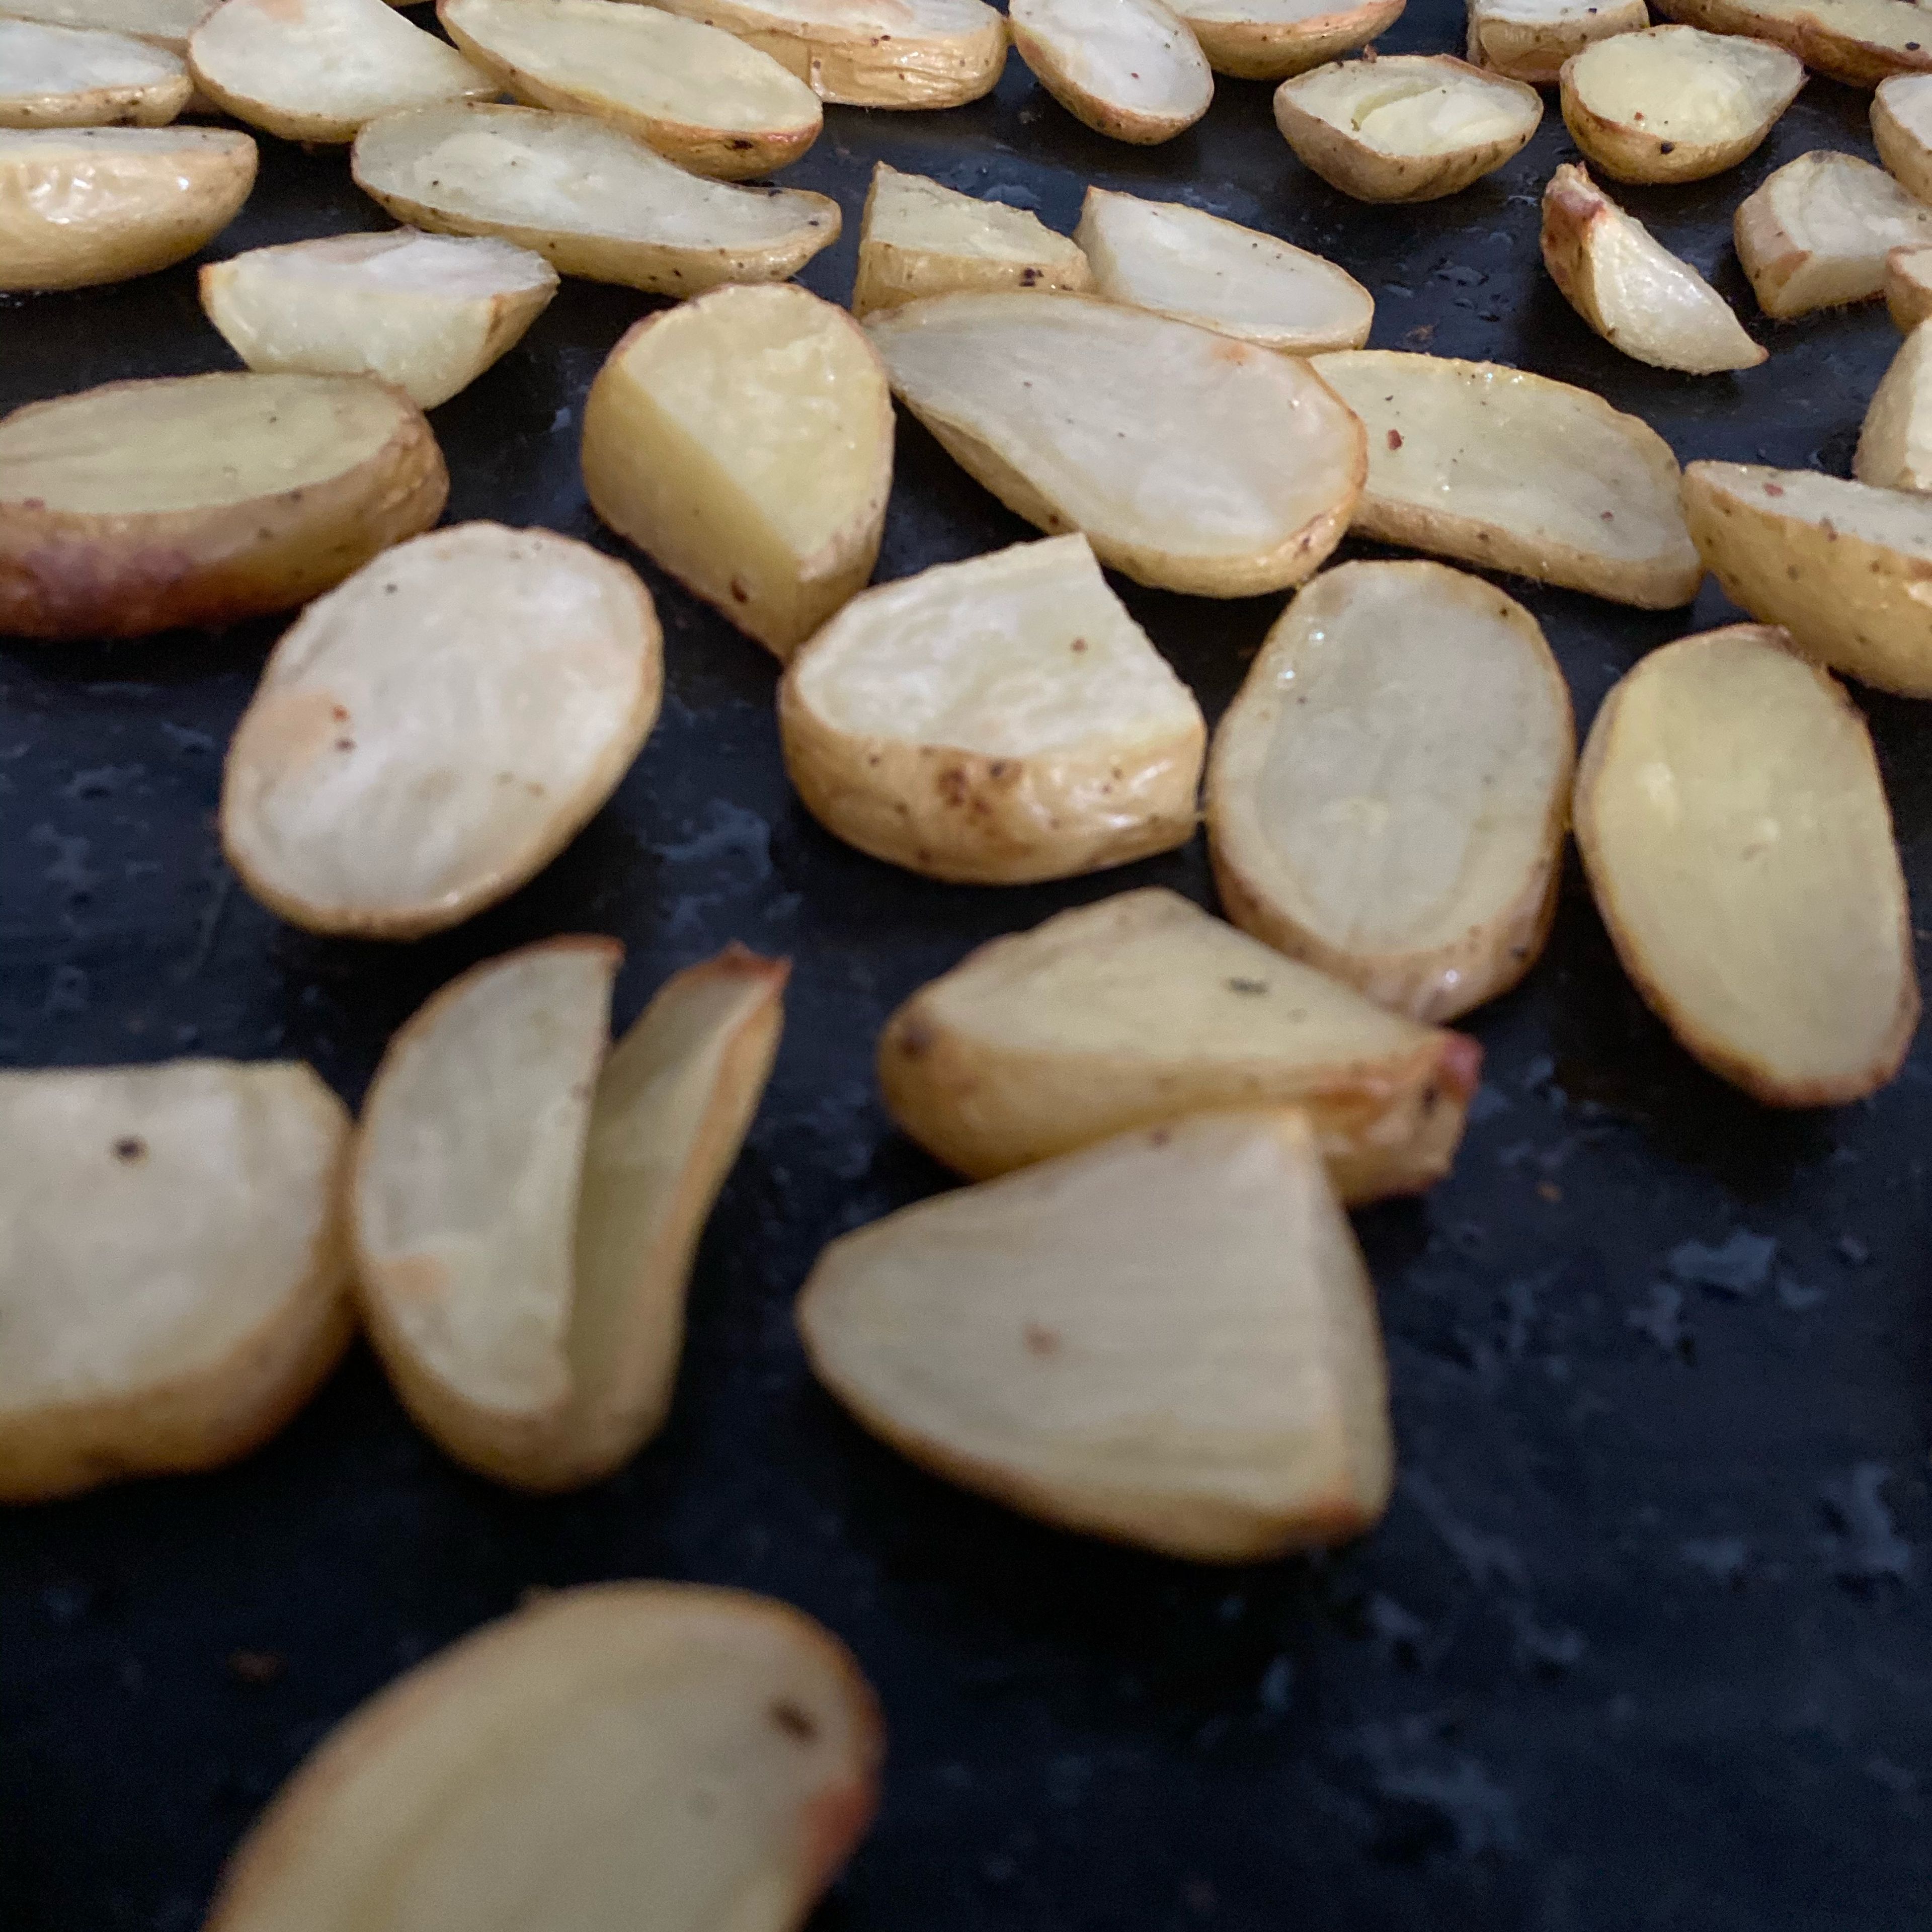 Kartoffeln aus dem Backofen nehmen, wenn sie eine schöne goldbraune Farbe bekommen haben. Kann auch etwas länger als 30 Minuten dauern, je nach Art und Dicke der Kartoffeln.